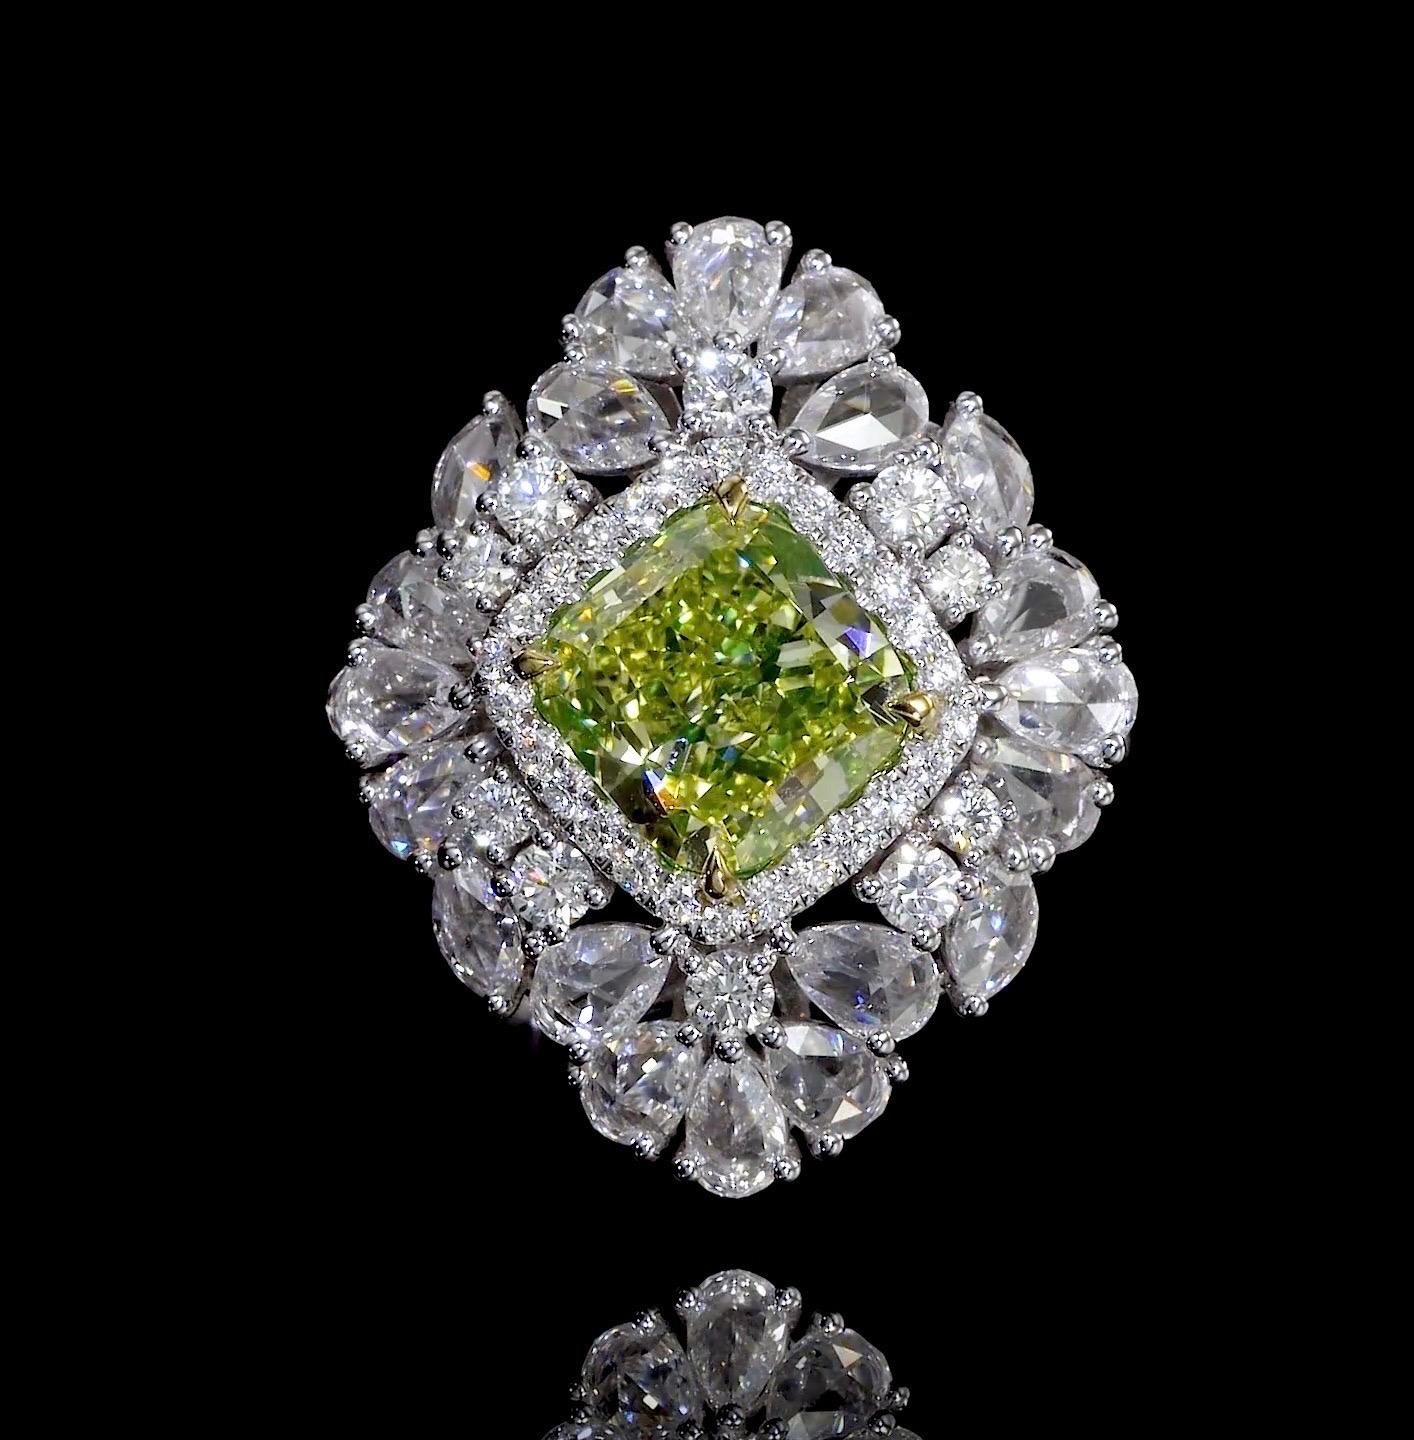 Cushion Cut Emilio Jewelry Gia Certified 6.80 Carat Fancy Intense Green Yellow Diamond Ring